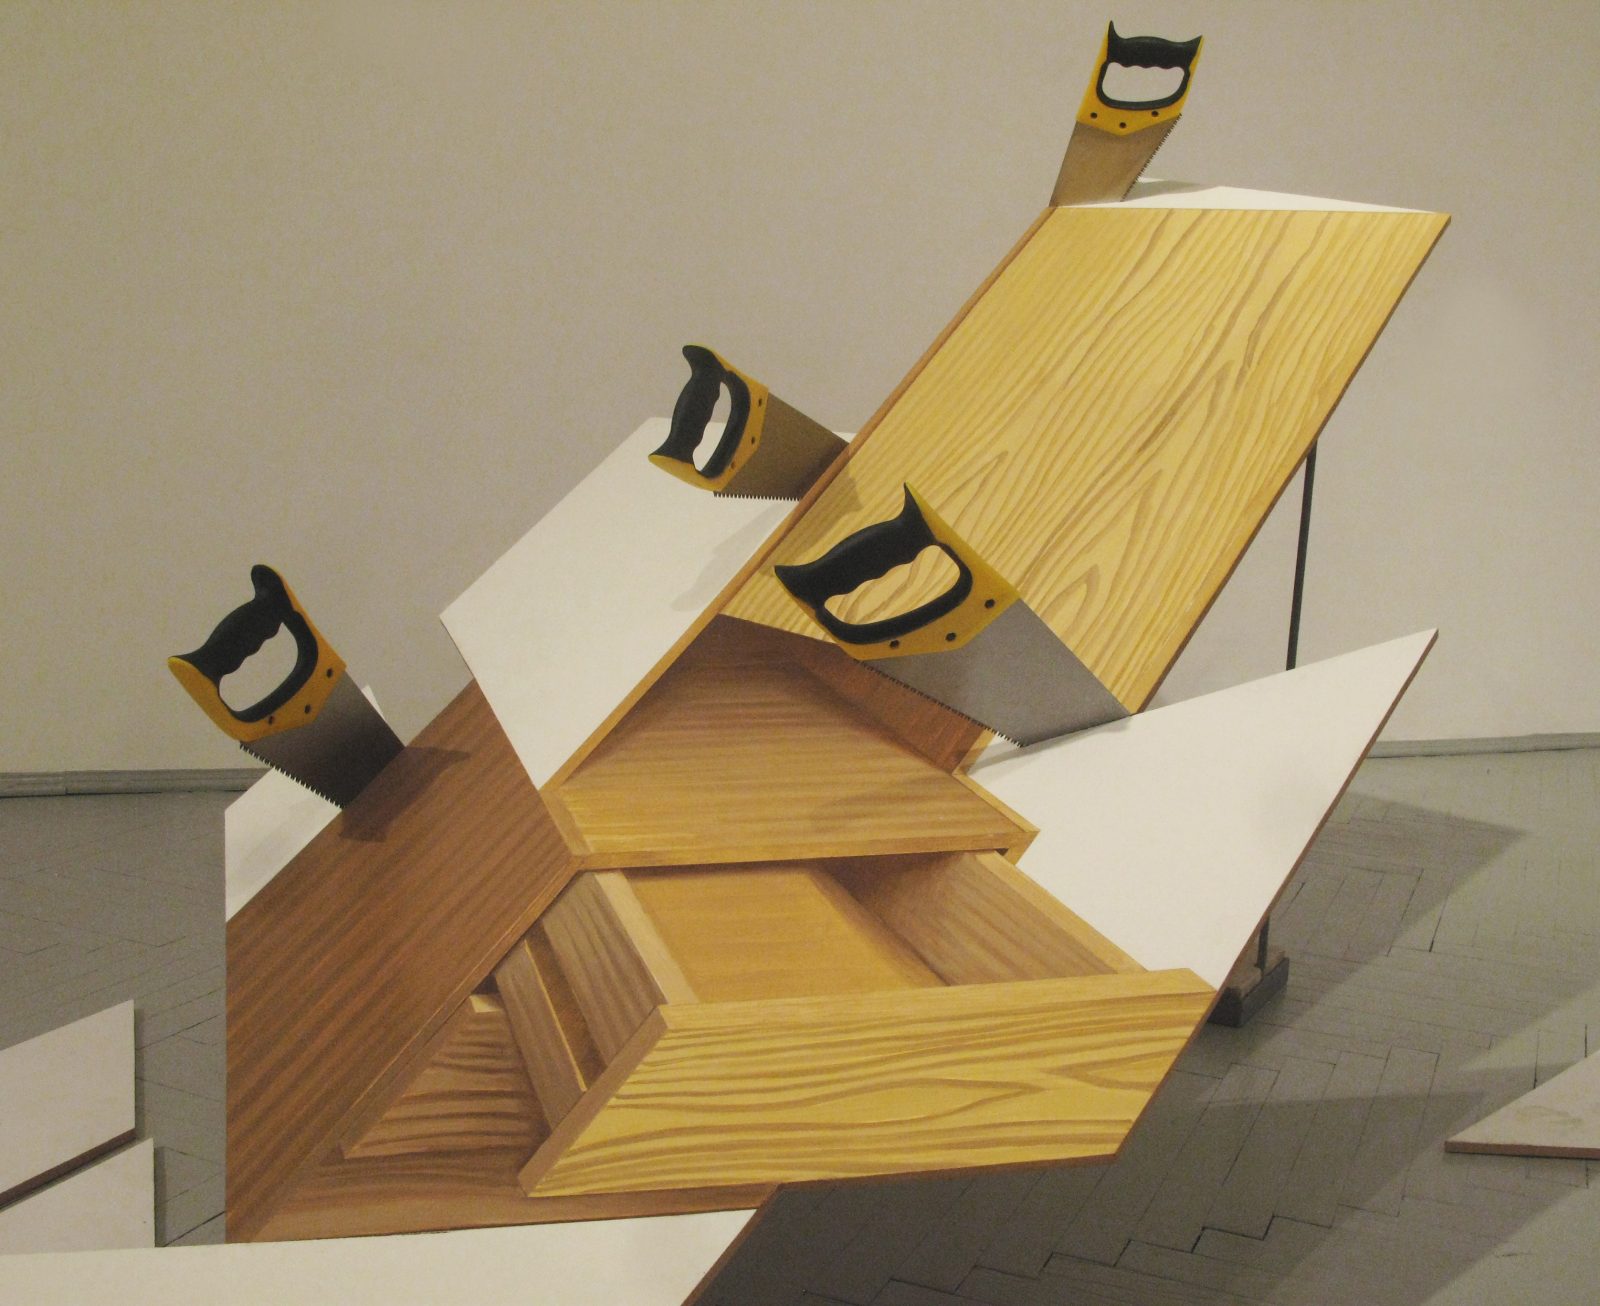 Jan Mioduszewski, „Cięcie drewna”, 2009, tempera i olej na płycie MDF, 4 piły, wymiary zmienne